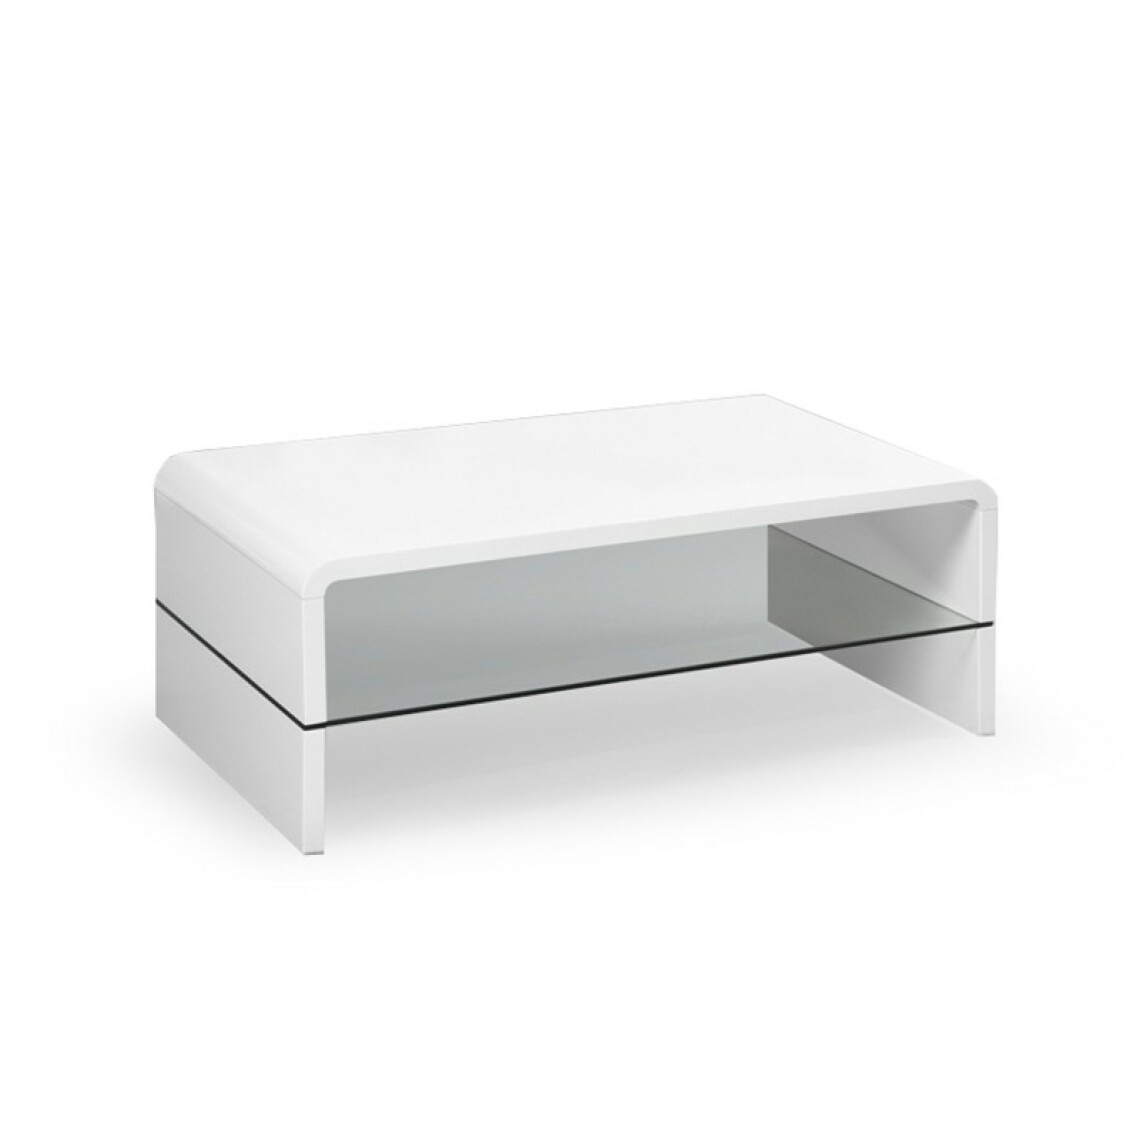 Carellia - Table basse laqué 110 cm x 60 cm x 41 cm - Blanc - Tables basses